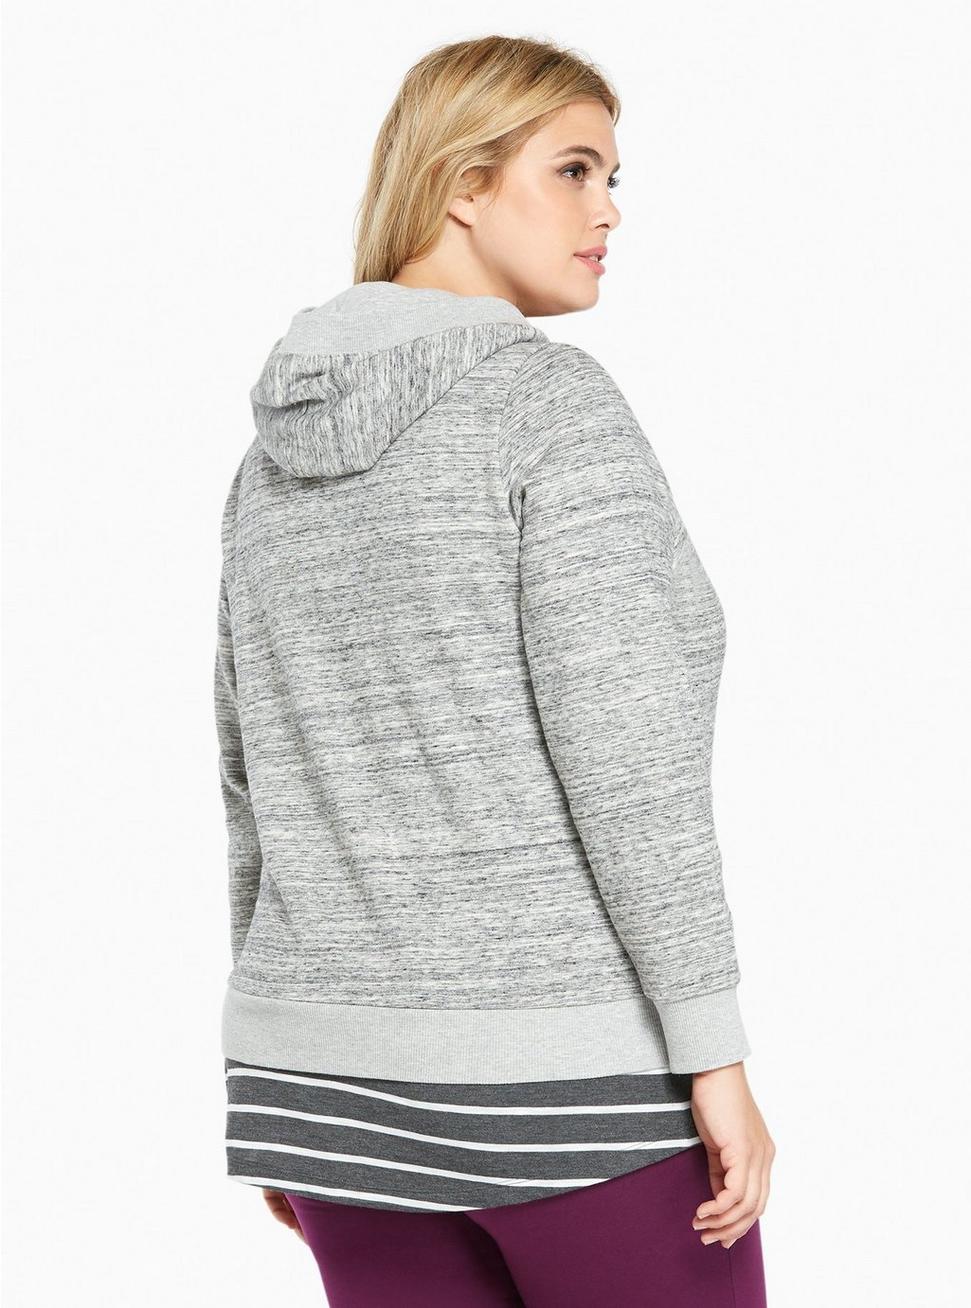 Plus Size - Lace Up Cropped Hoodie Sweatshirt - Torrid